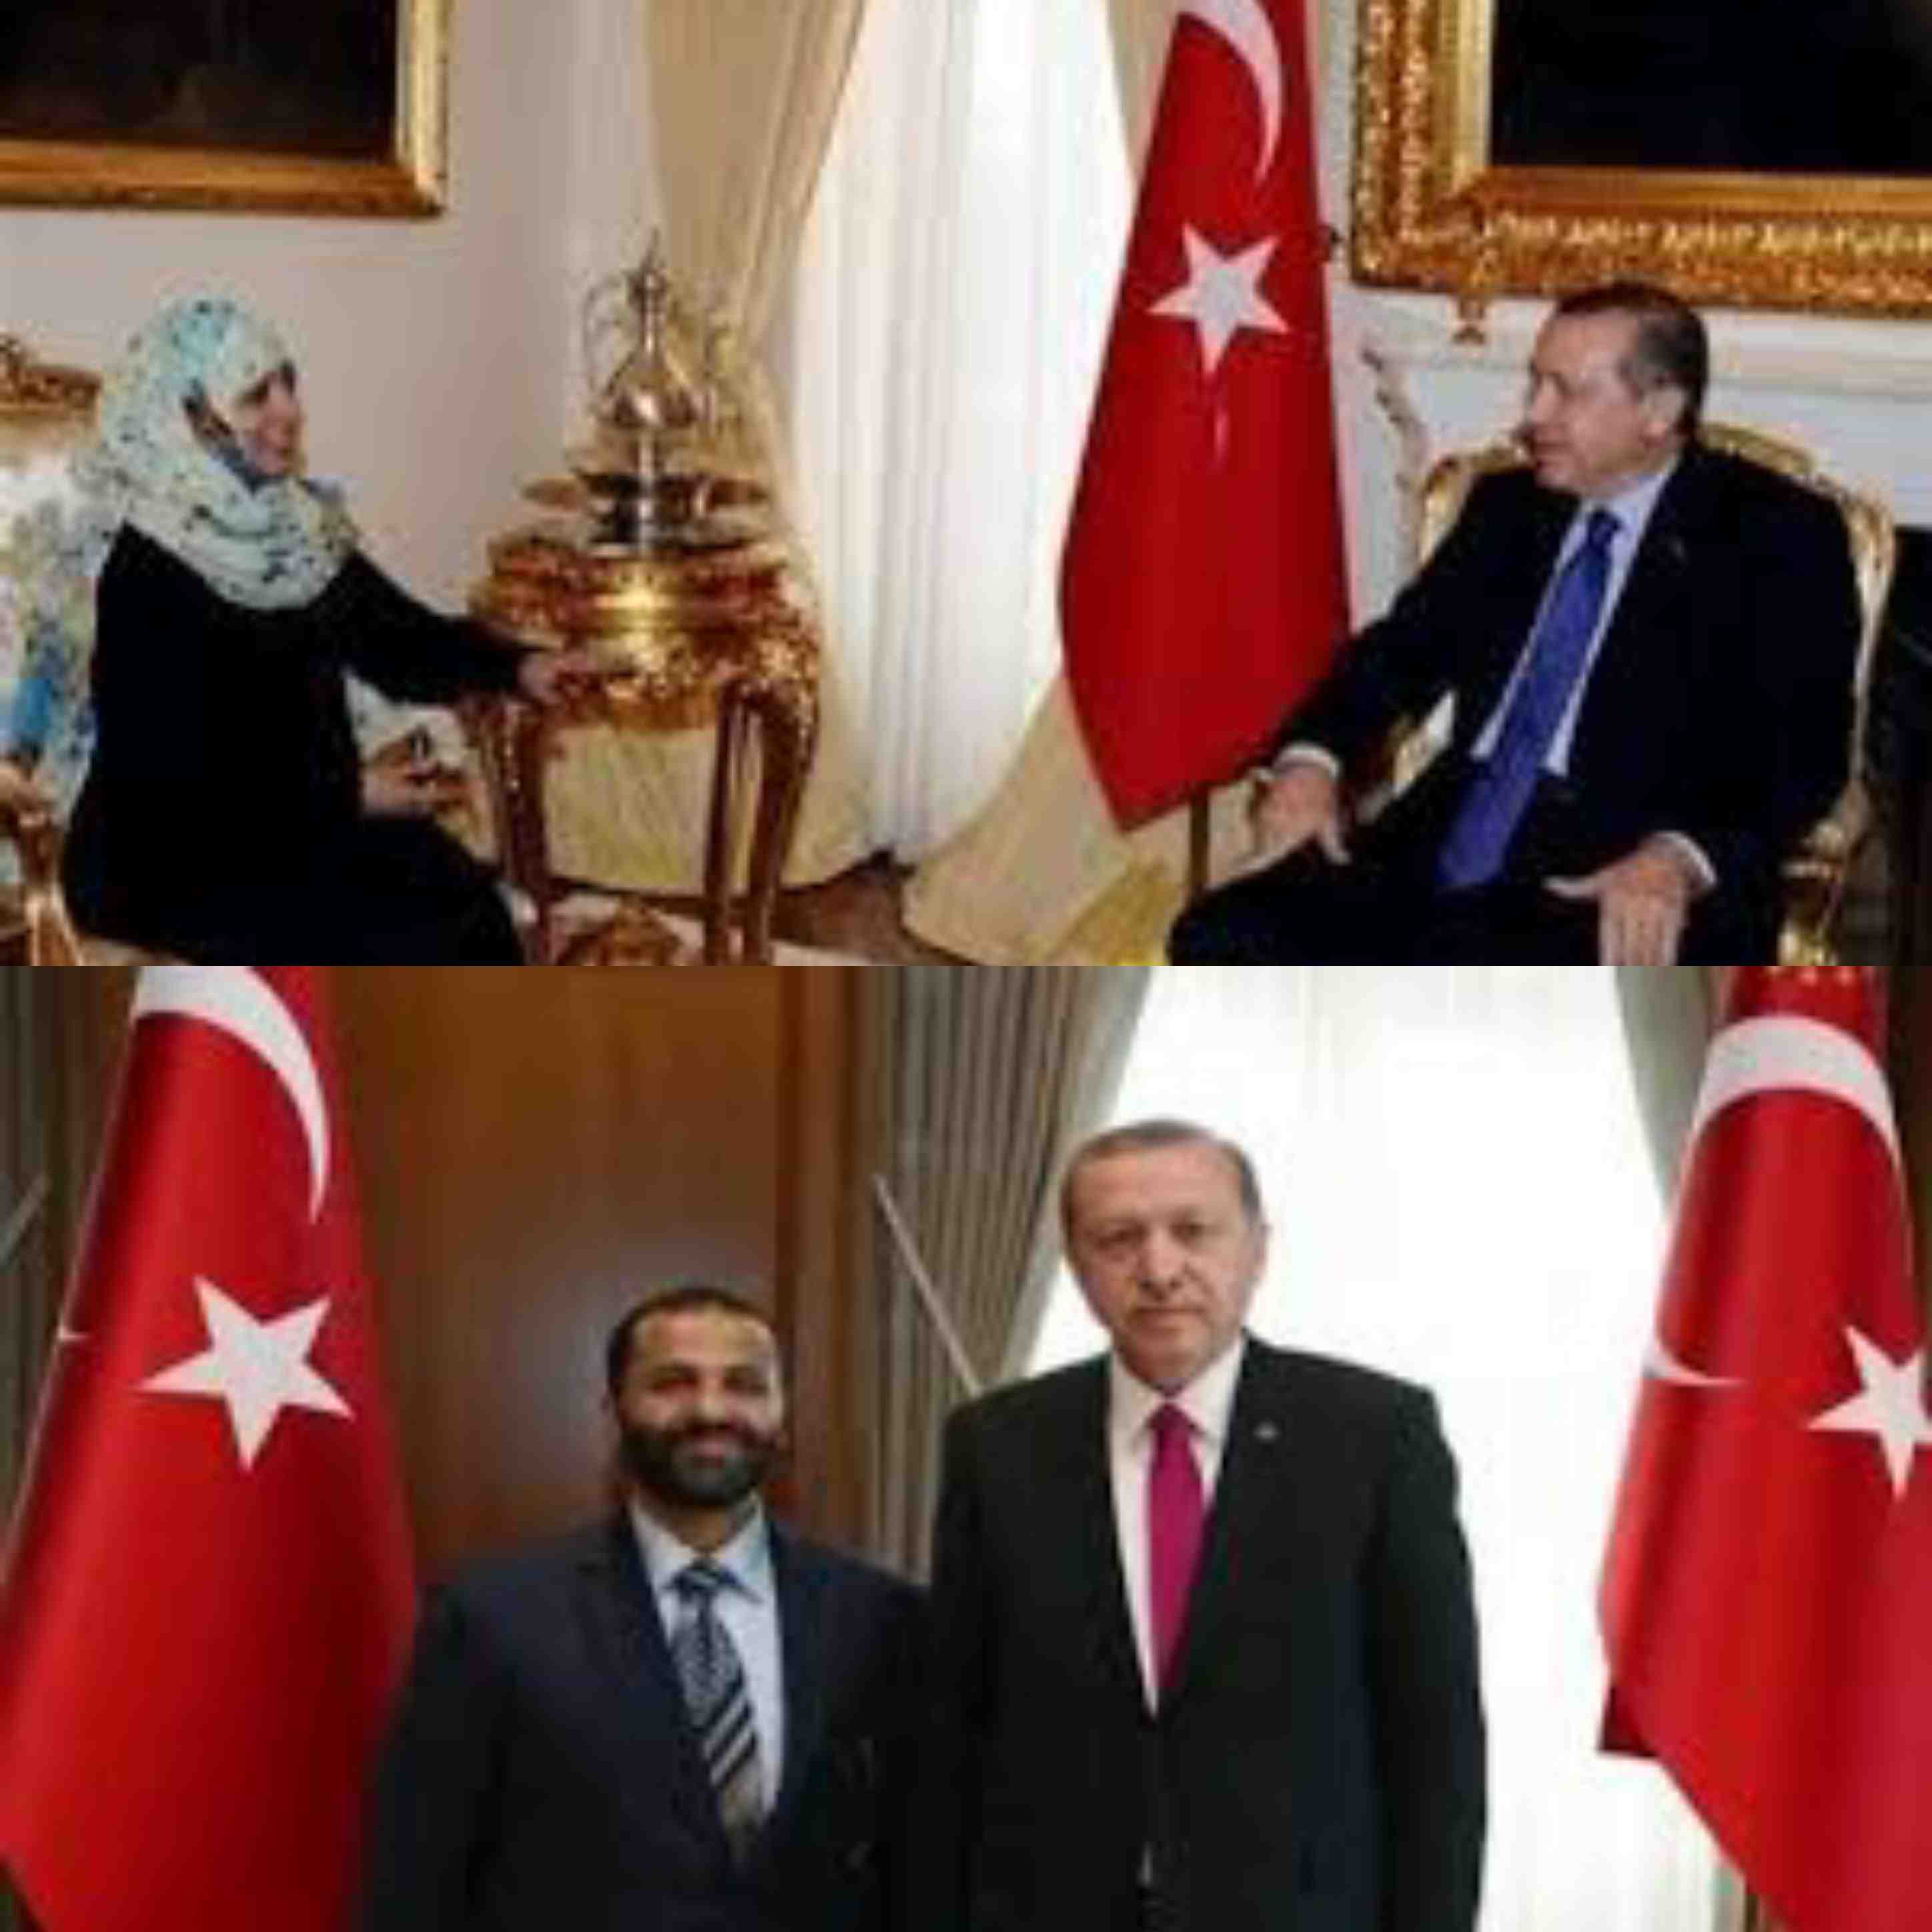 اسطنبول حميد الاحمر وتوكل كرمان واخرون يتبرعون ب7 مليون دولار لدعم حملة أردوغان الانتخابية واليمنيون يتسولون الافطار في مساجد انقرة